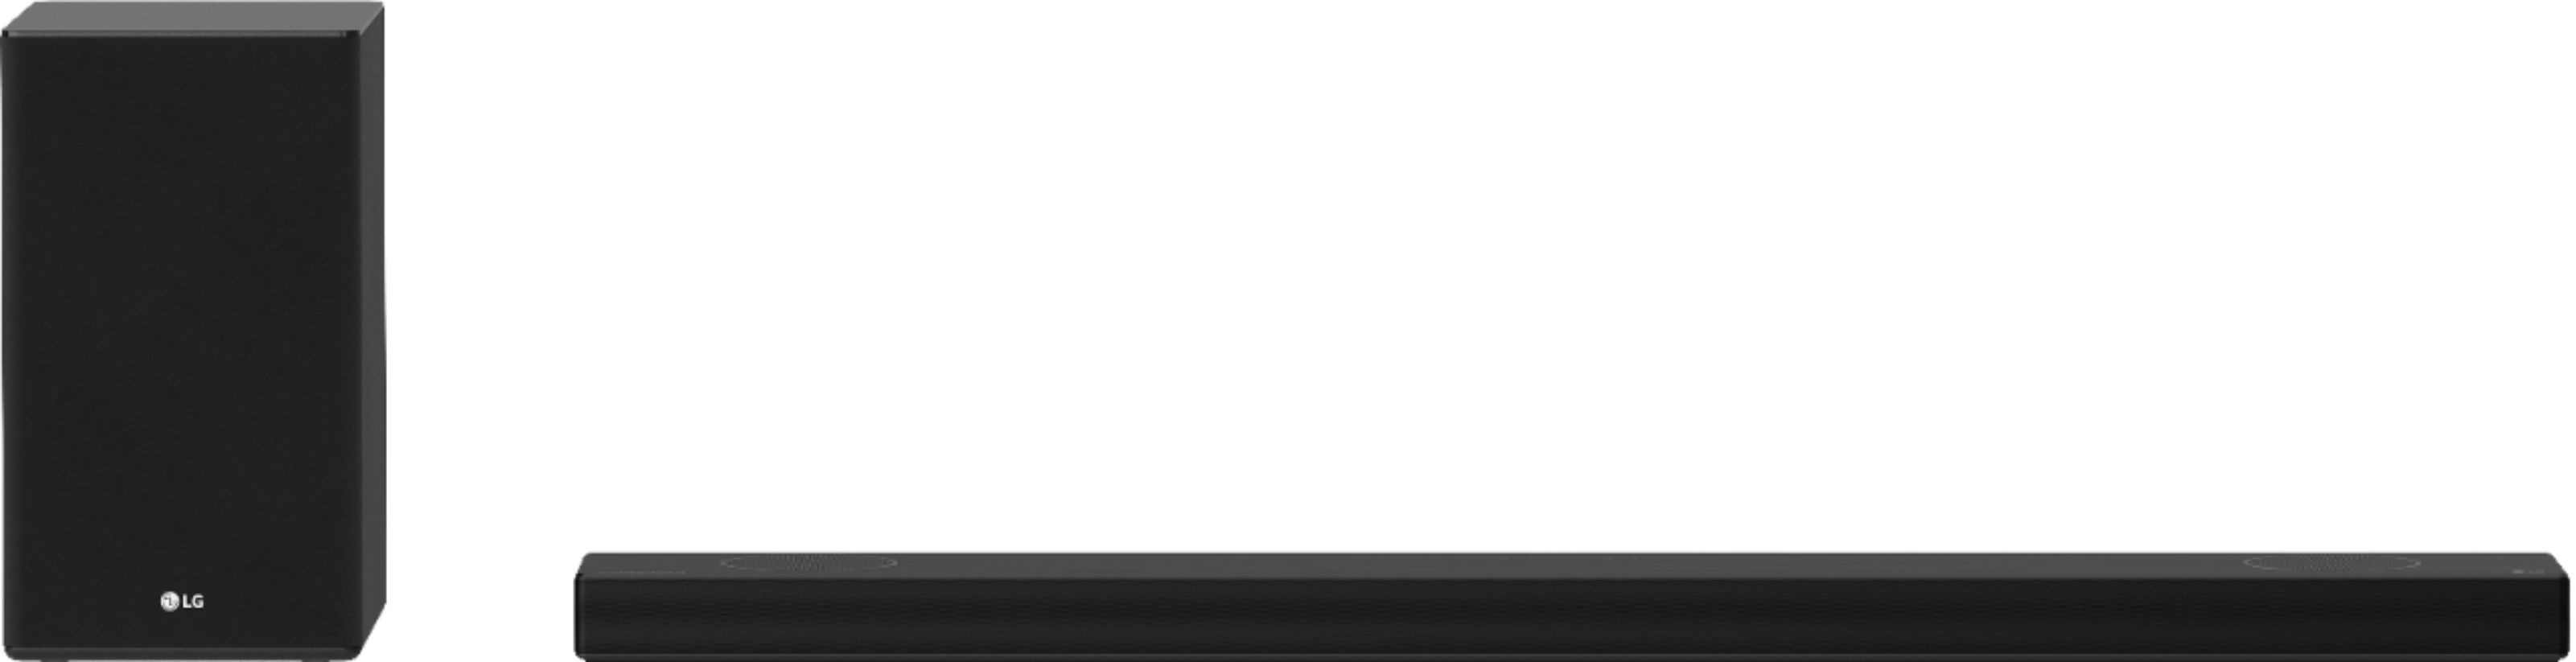 LG SP9YA 5.1.2 ch Sound Bar with Dolby Atmos – Black